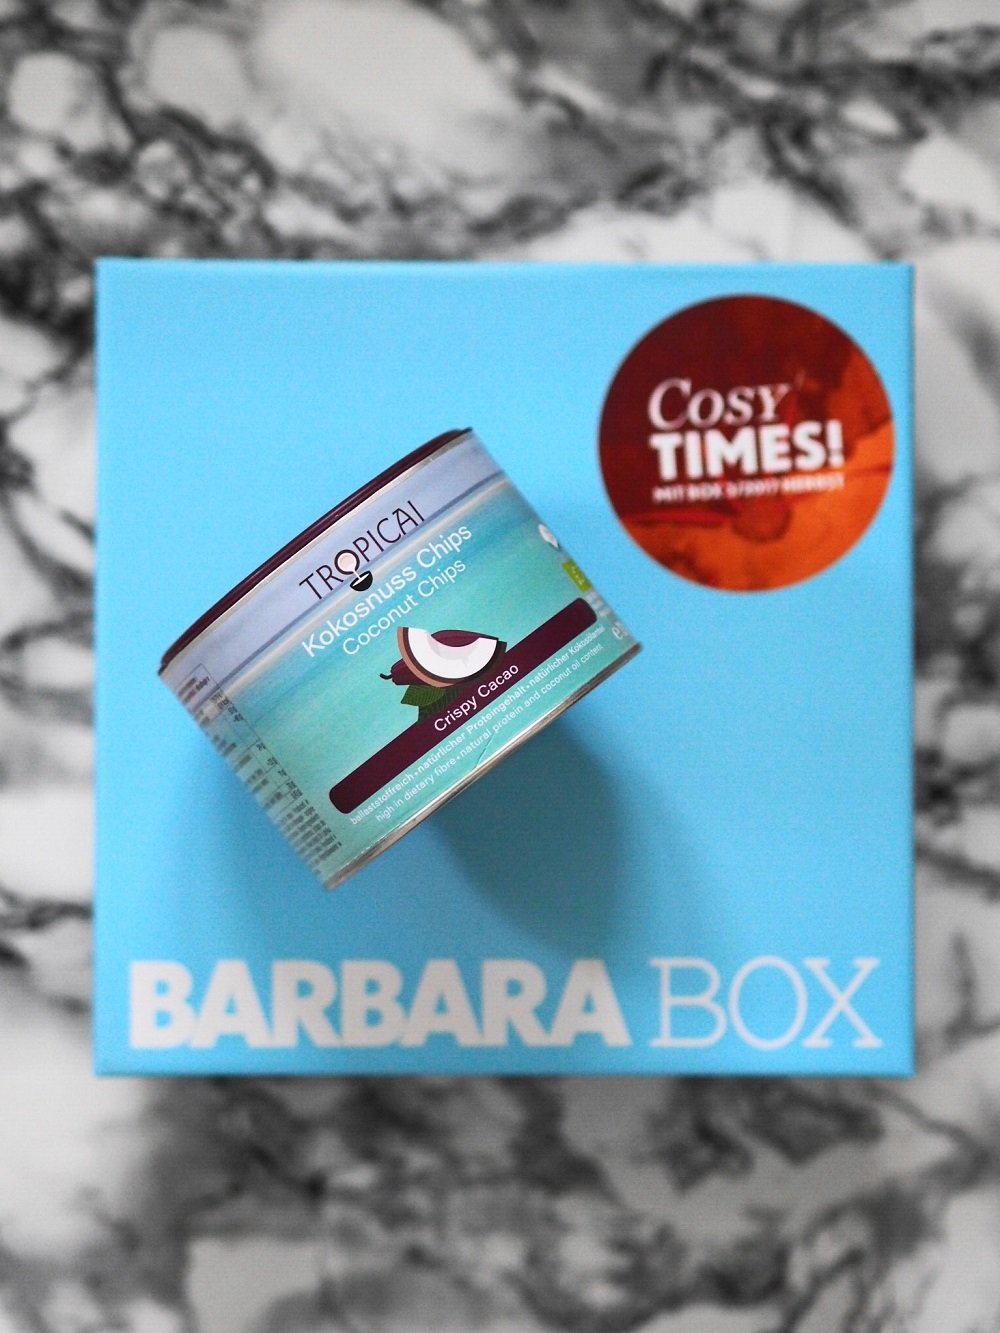 Heute stelle ich euch in meinem Blog den vielseitigen und hochwertigen Inhalt von der aktuellen Barbara Box Cosy Times näher vor